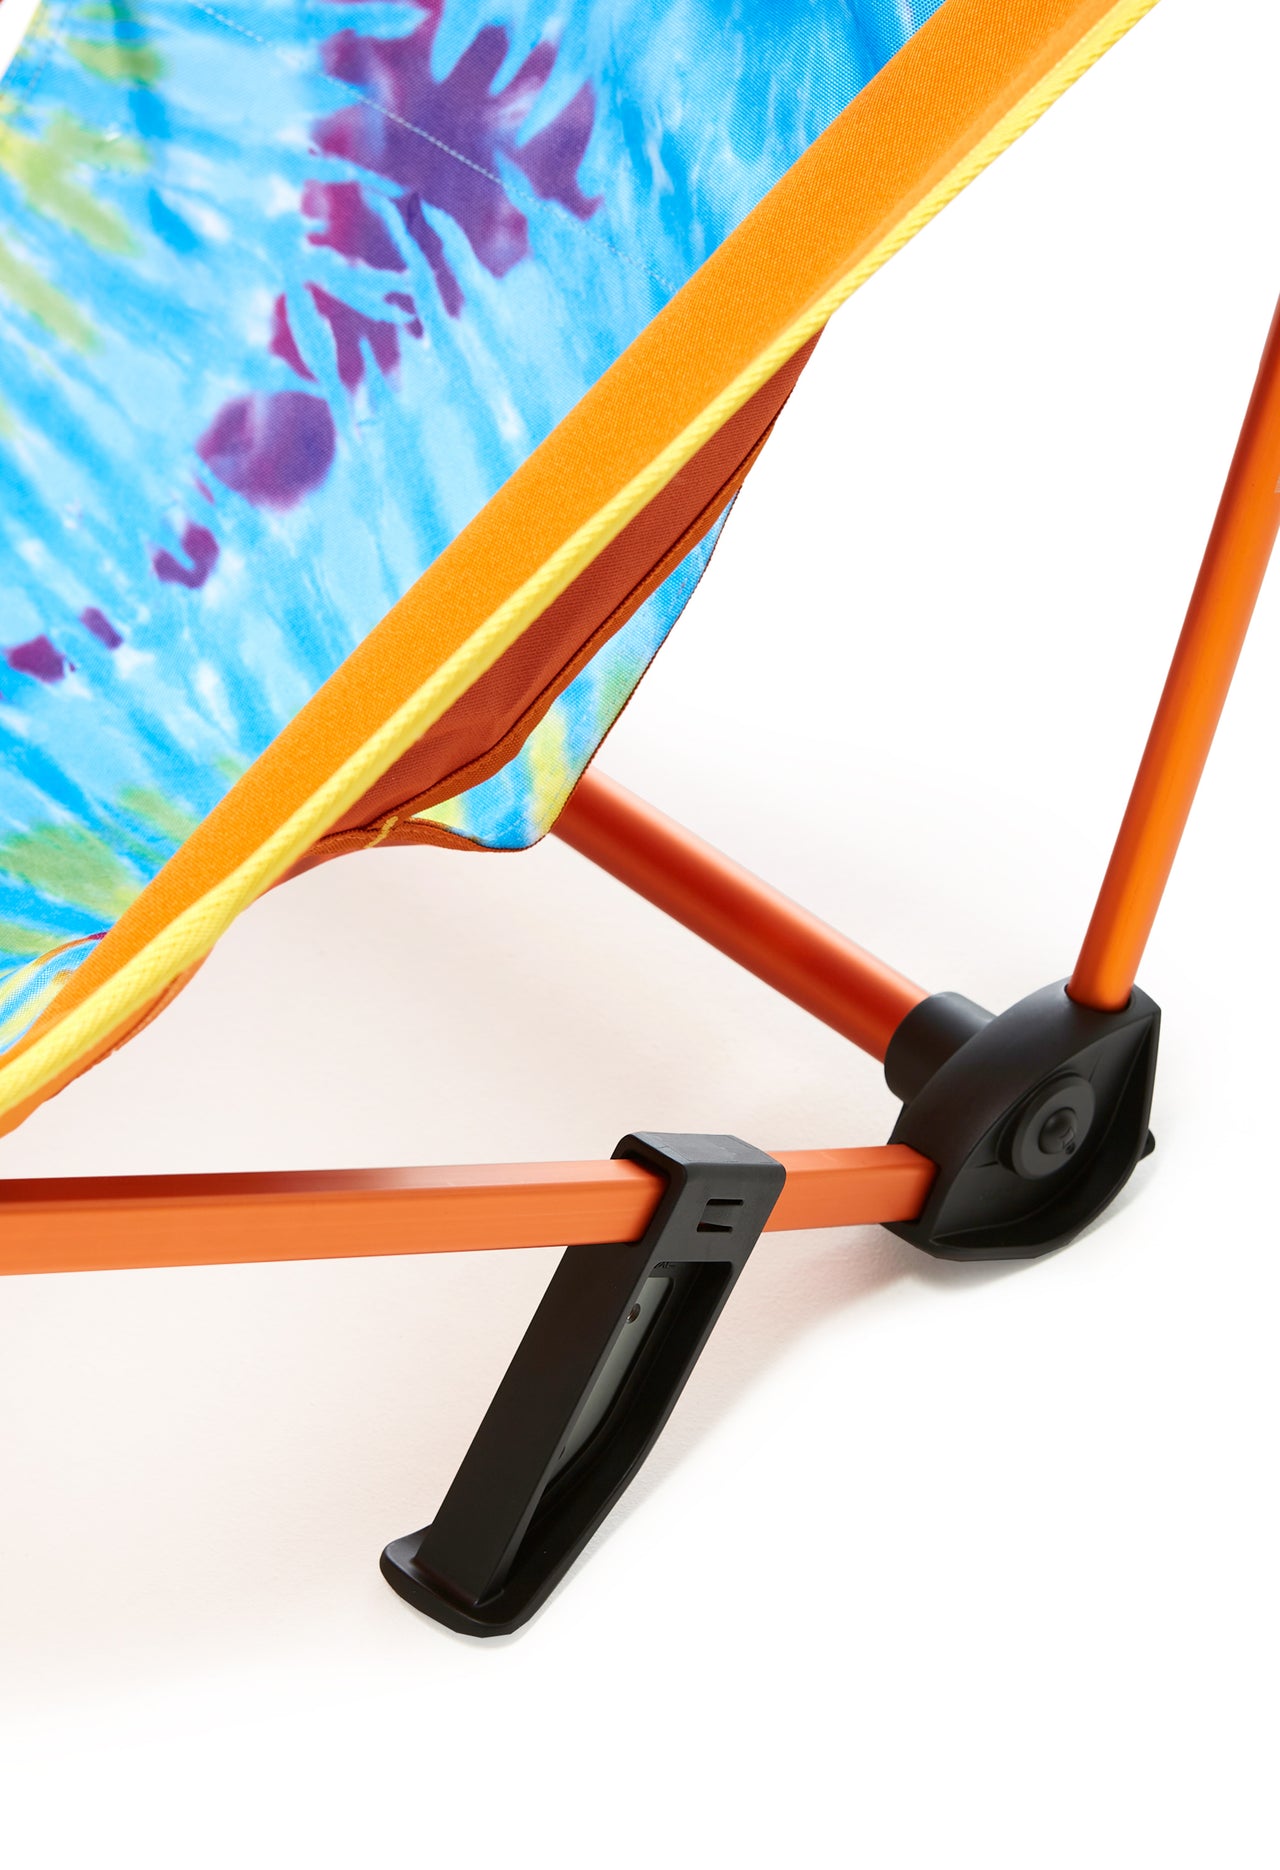 Helinox Incline Festival Chair - Tie Dye